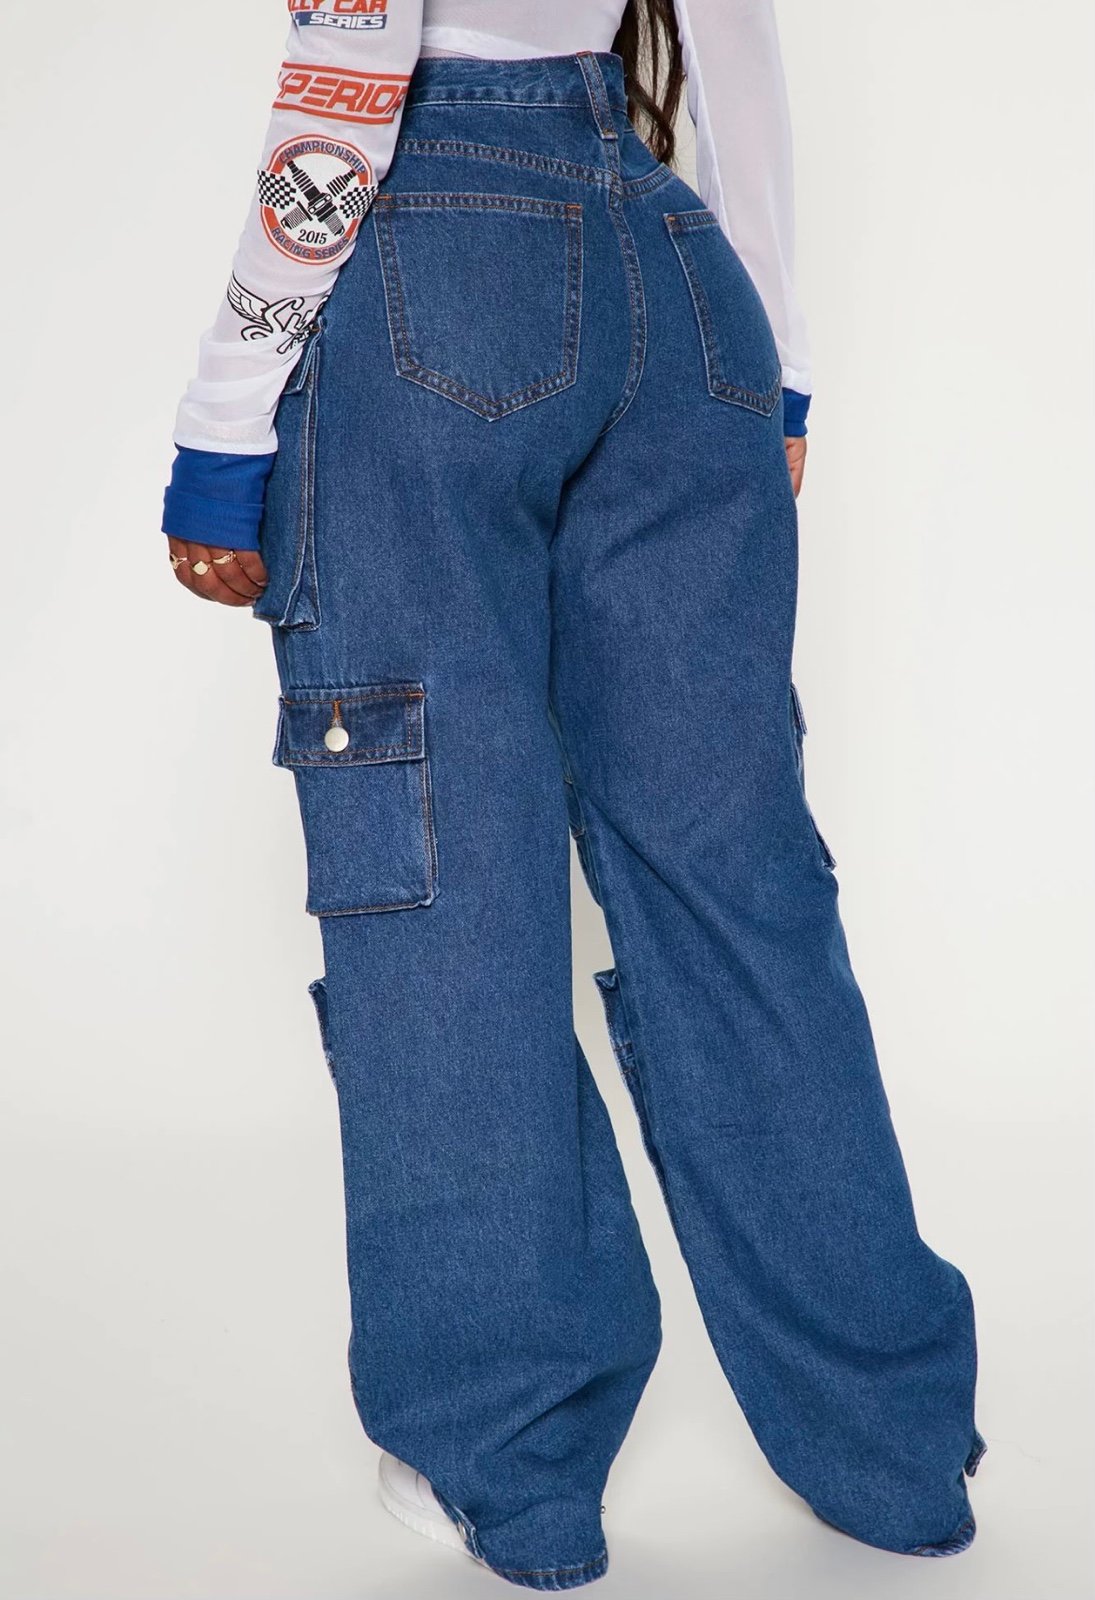 Buy Fashion Nova Billie Low Slung Cargo Jeans - Medium Wash OyiqPIPfG just buy it